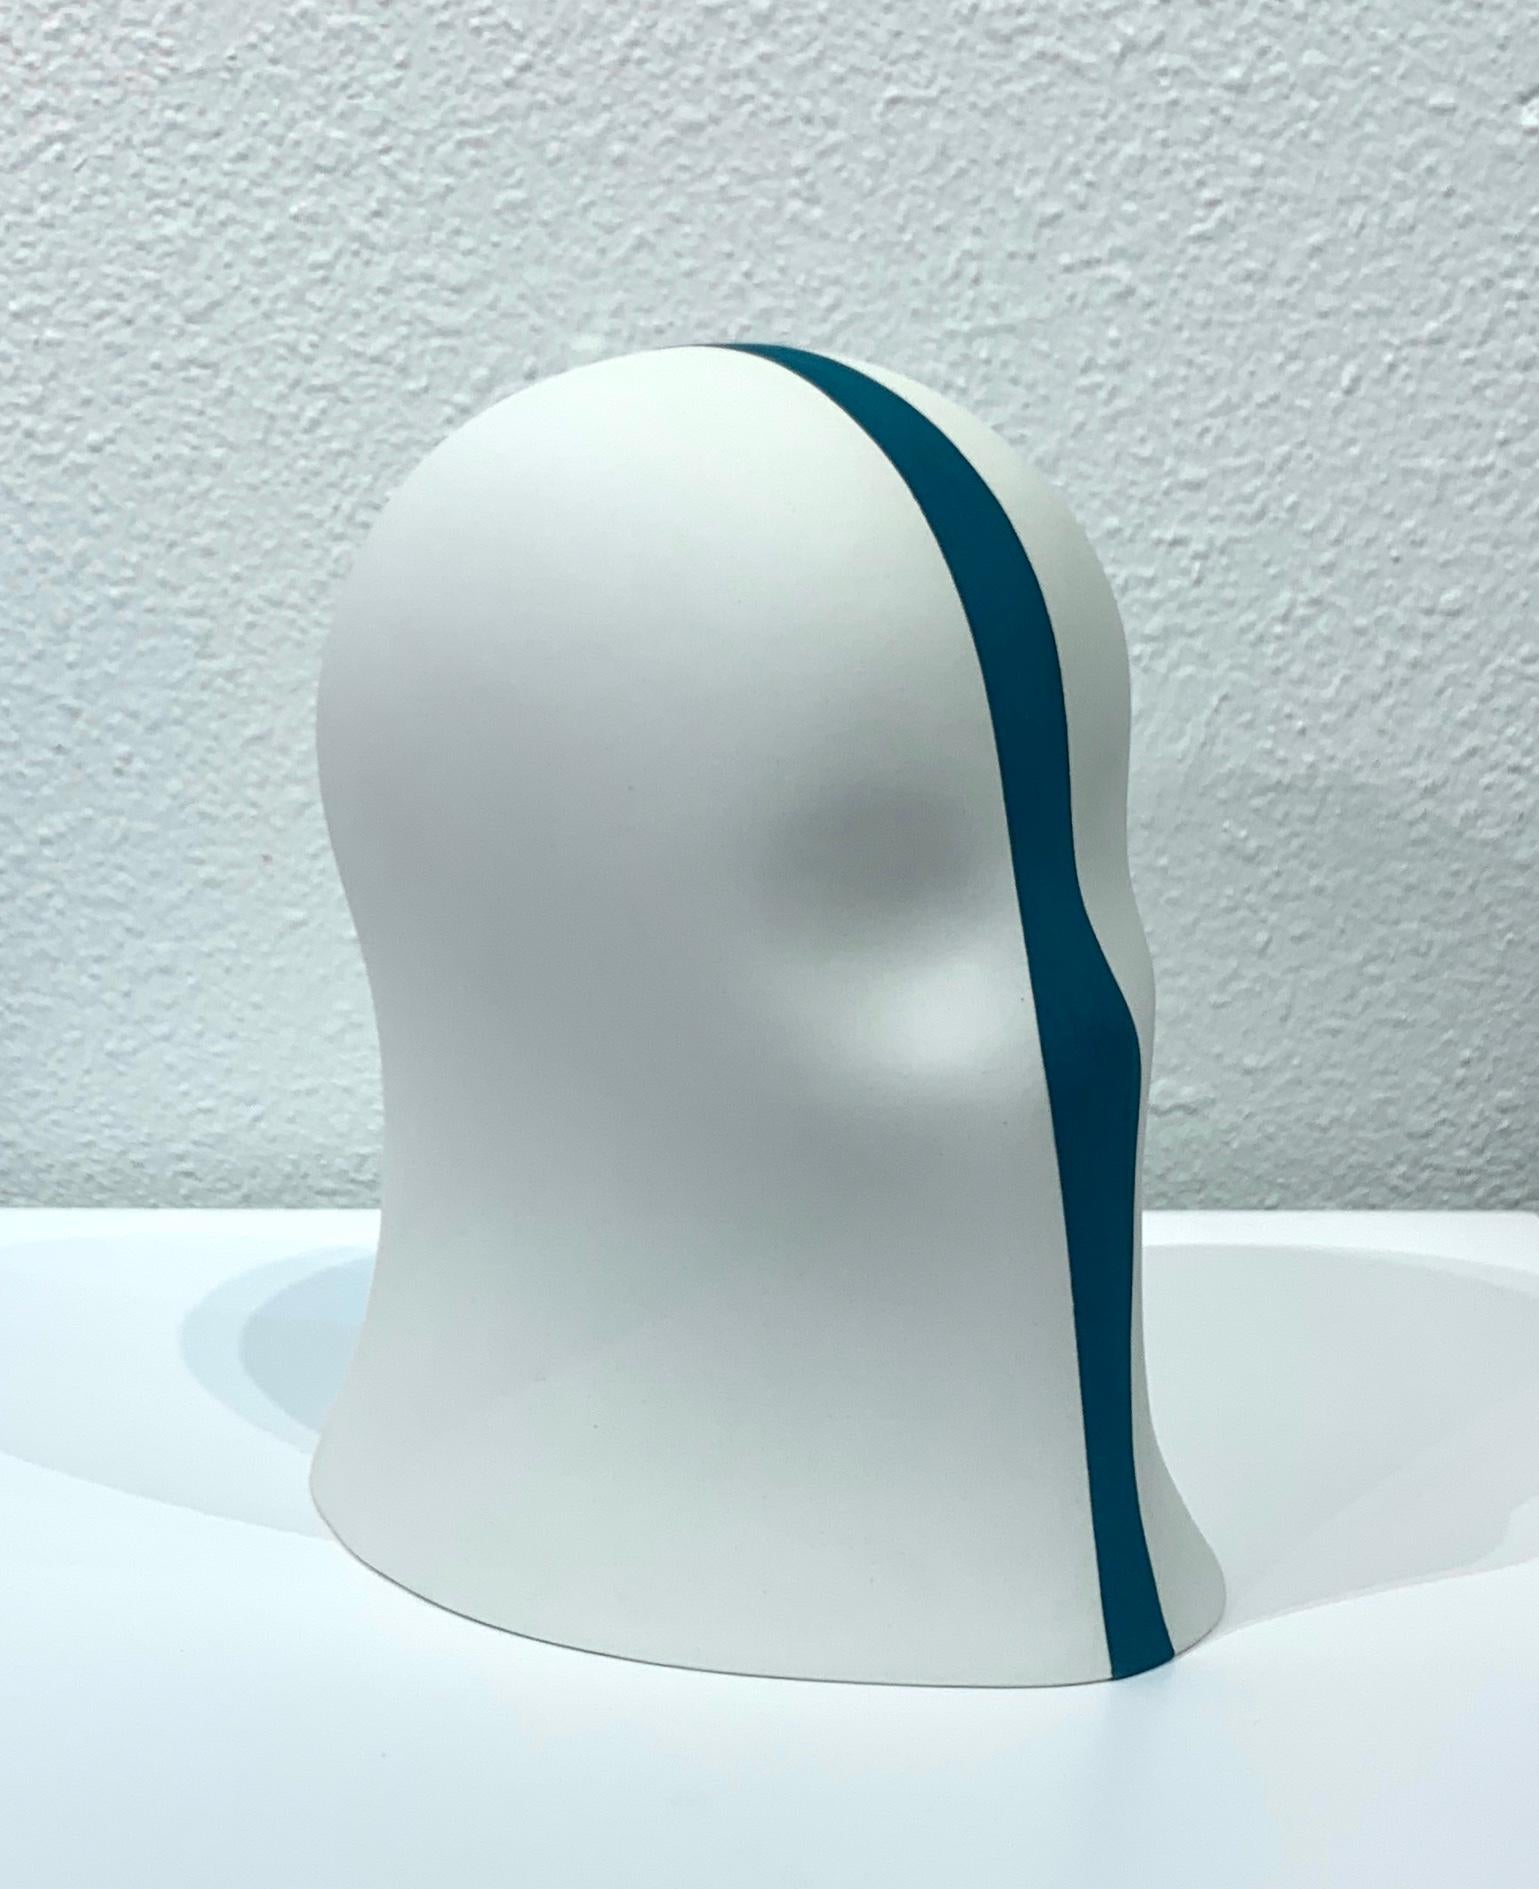 Teal Division Veil, Chloe Rizzo Sculpture Porcelain Female Head White 2